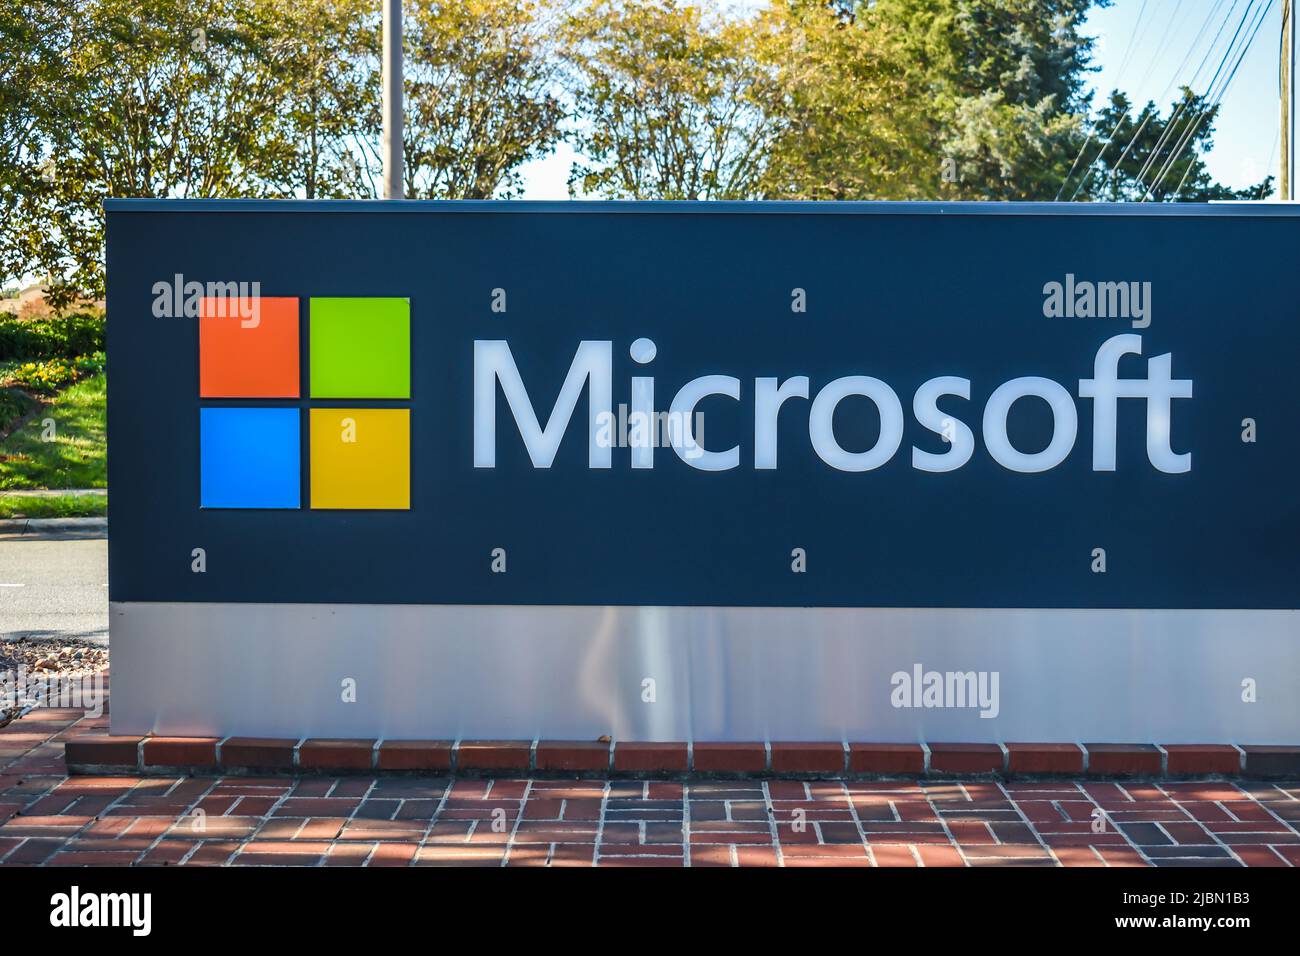 Microsoft Free debout marque et logo coloré publicité en plein air dans la lumière ombragée avec des arbres verts et le ciel dans l'arrière-plan. Banque D'Images